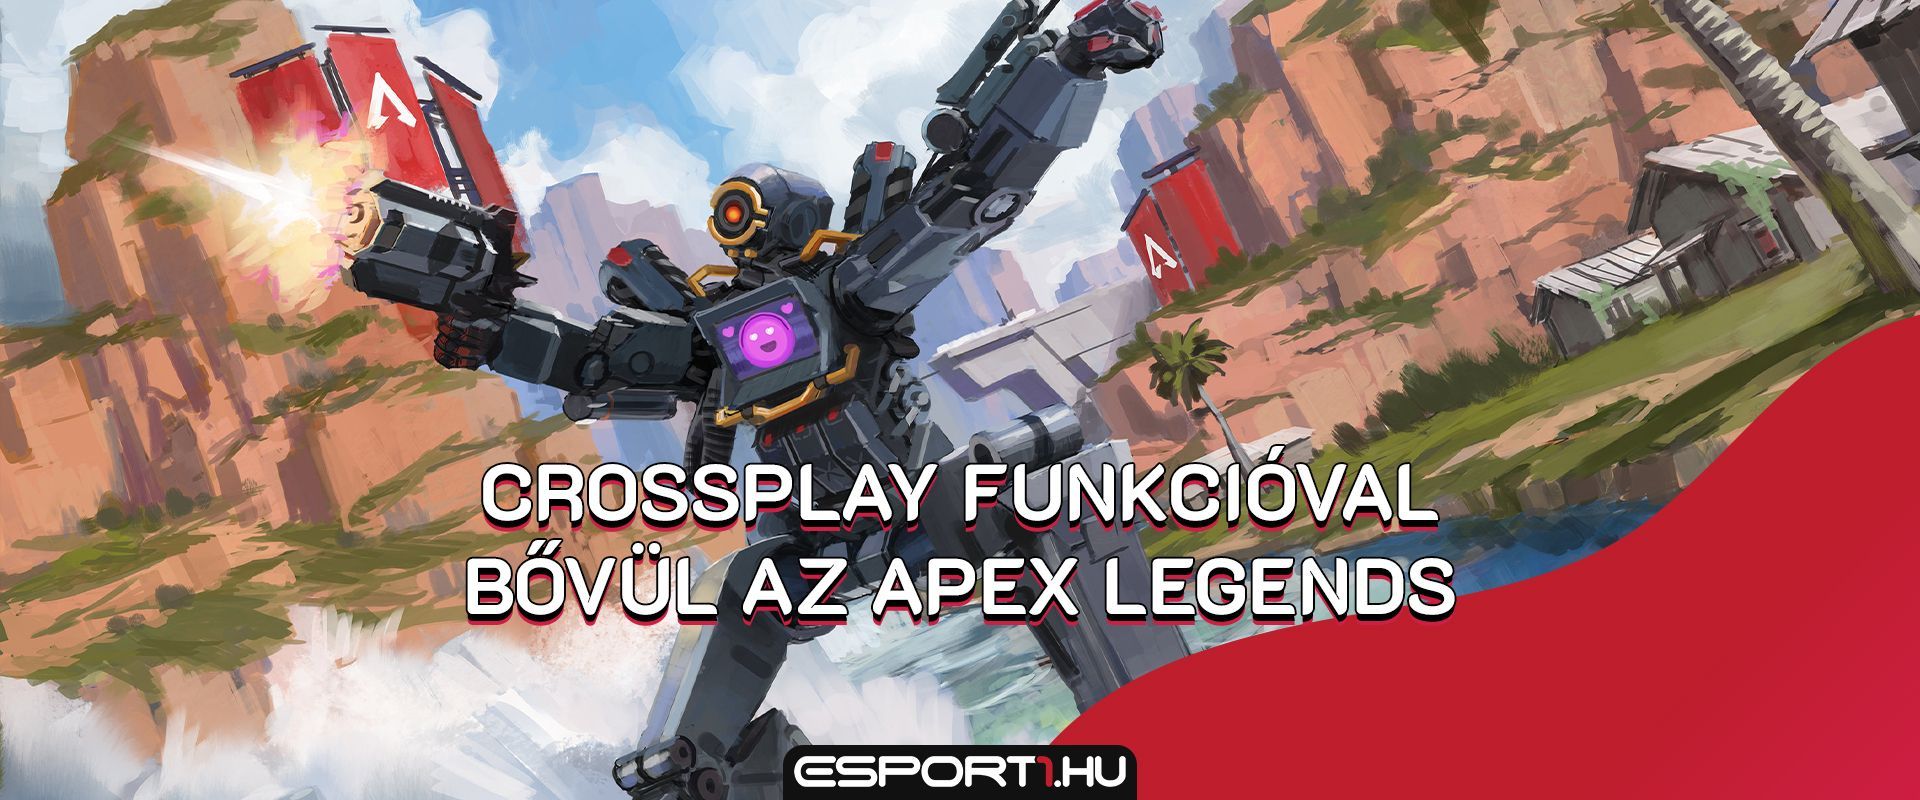 Érkezik Steamre az Apex Legends, a crossplay funkcióval együtt